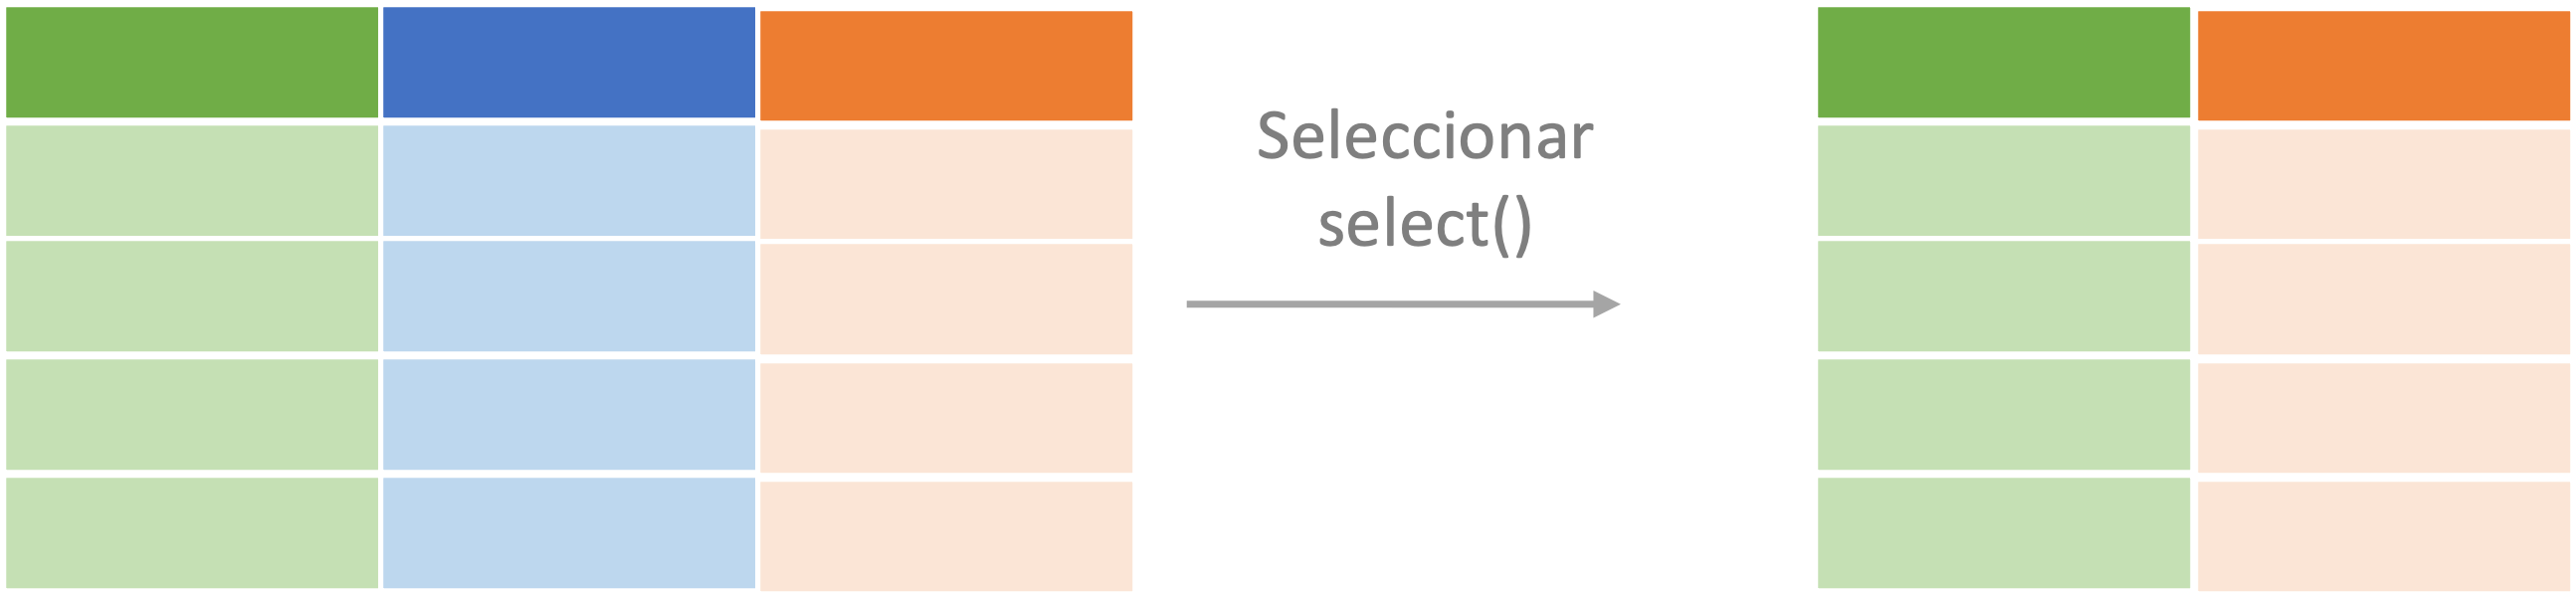 Representación del proceso de seleccionar (select()) aplicado a un objeto de clase data.frame o tibble